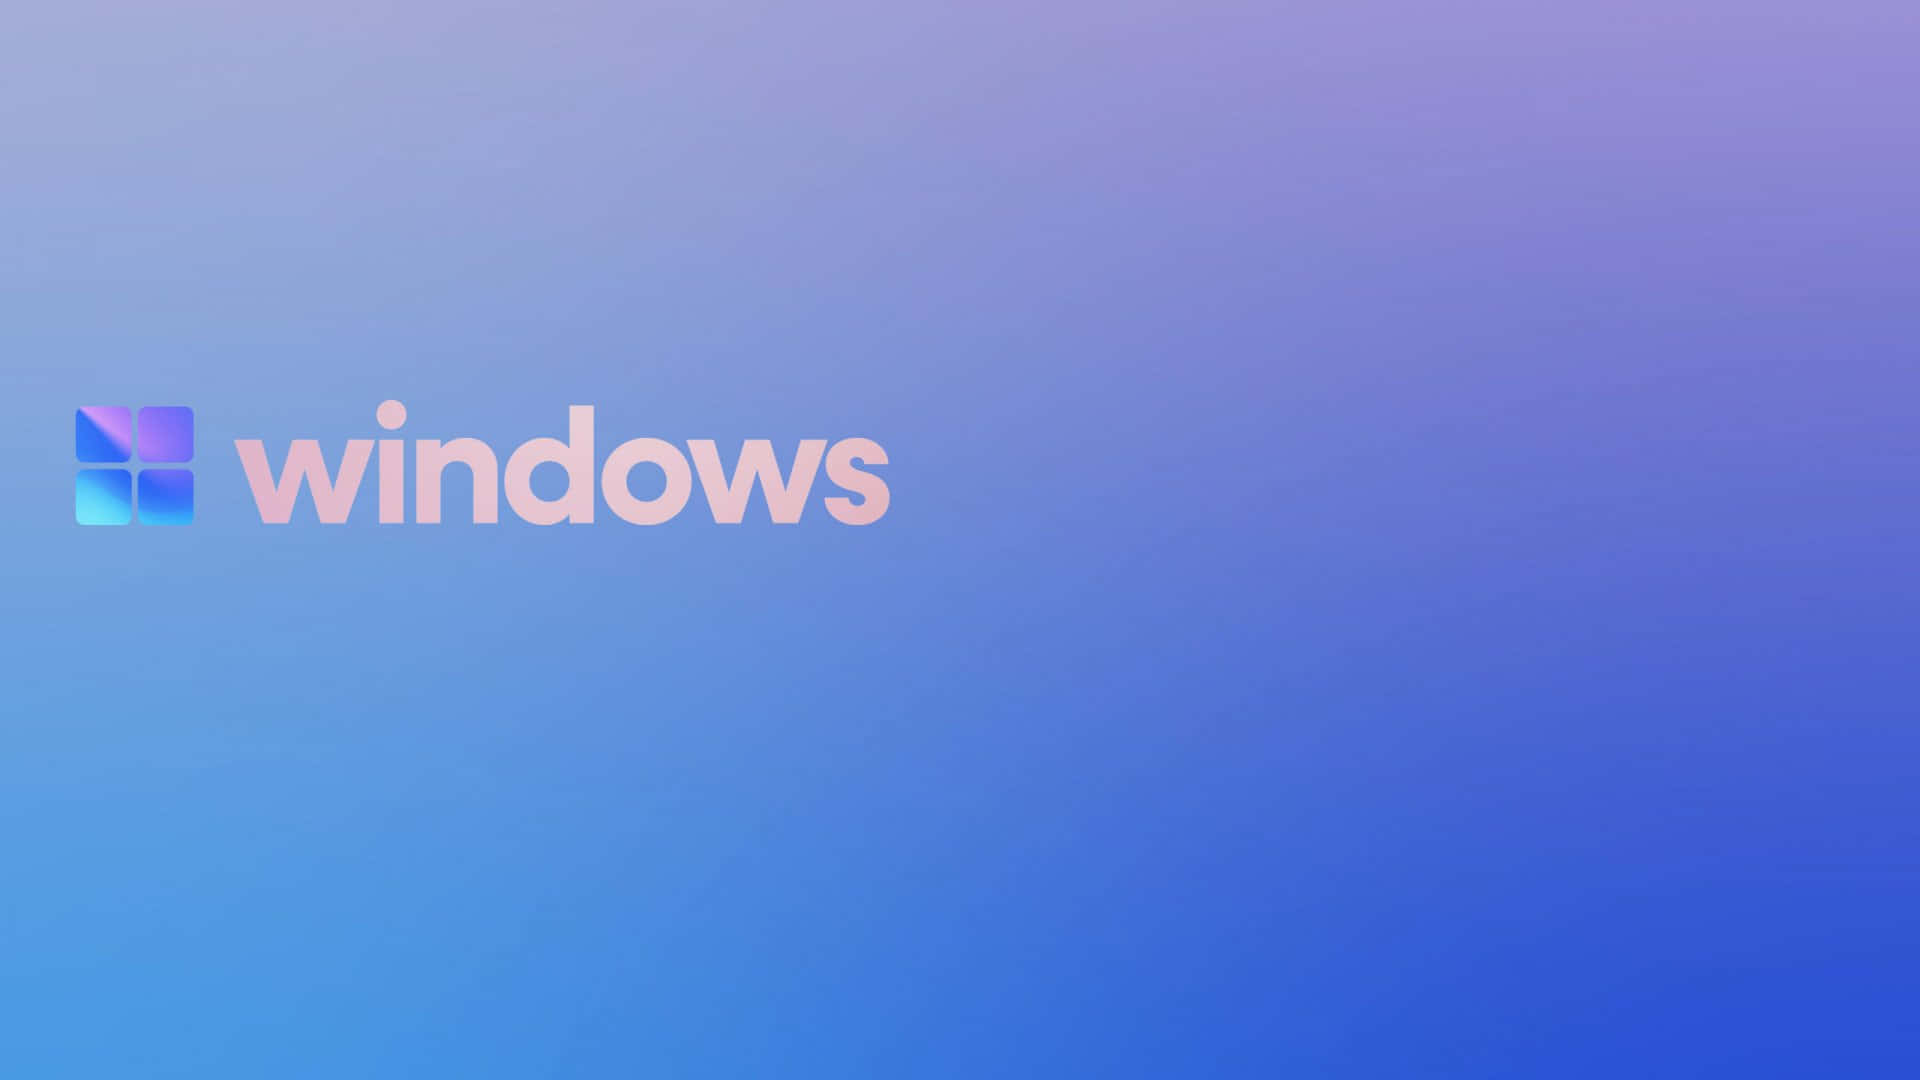 Windows Logo Gradient Background Wallpaper